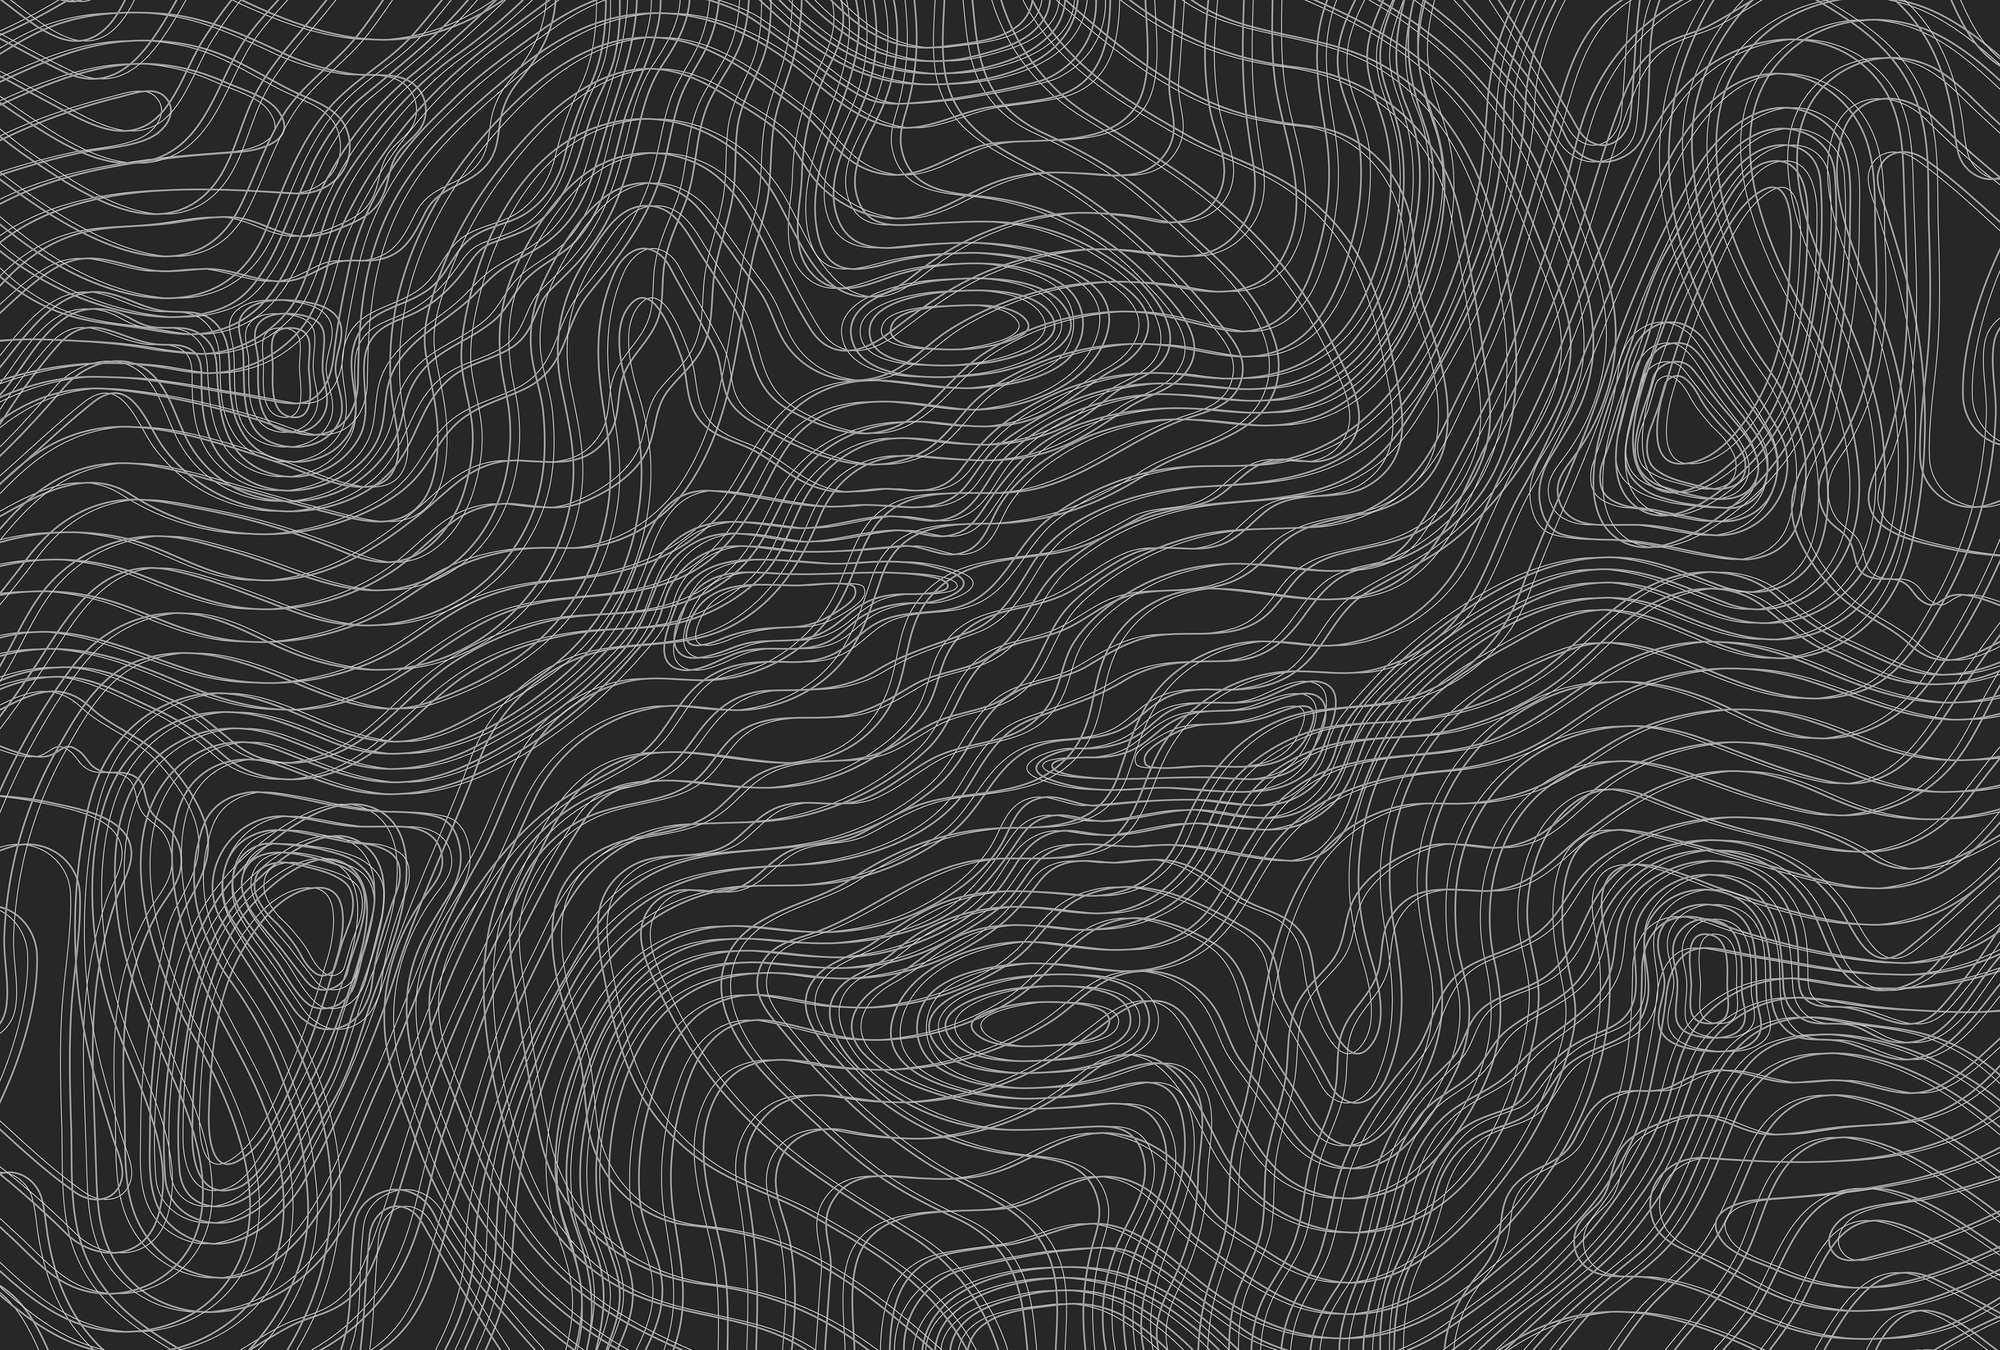             Dark line pattern mural, minimalist - black, white
        